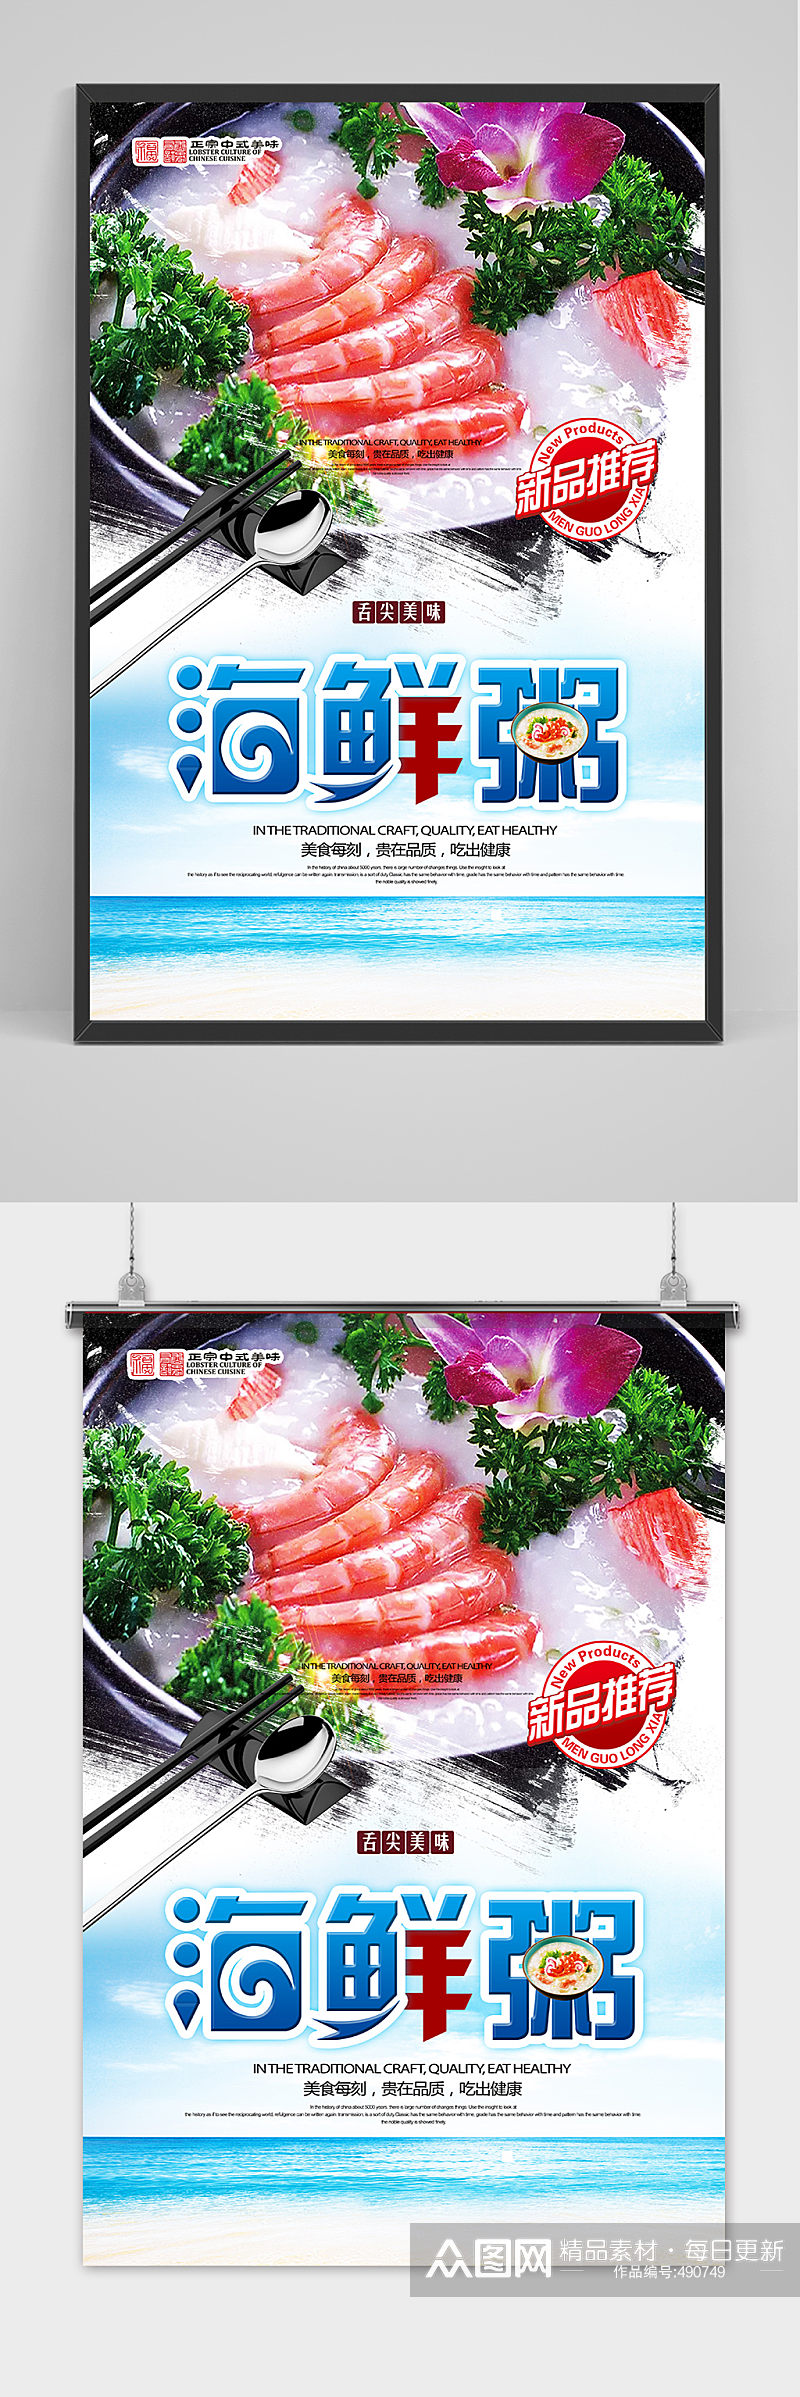 海鲜粥美食创意宣传海报素材